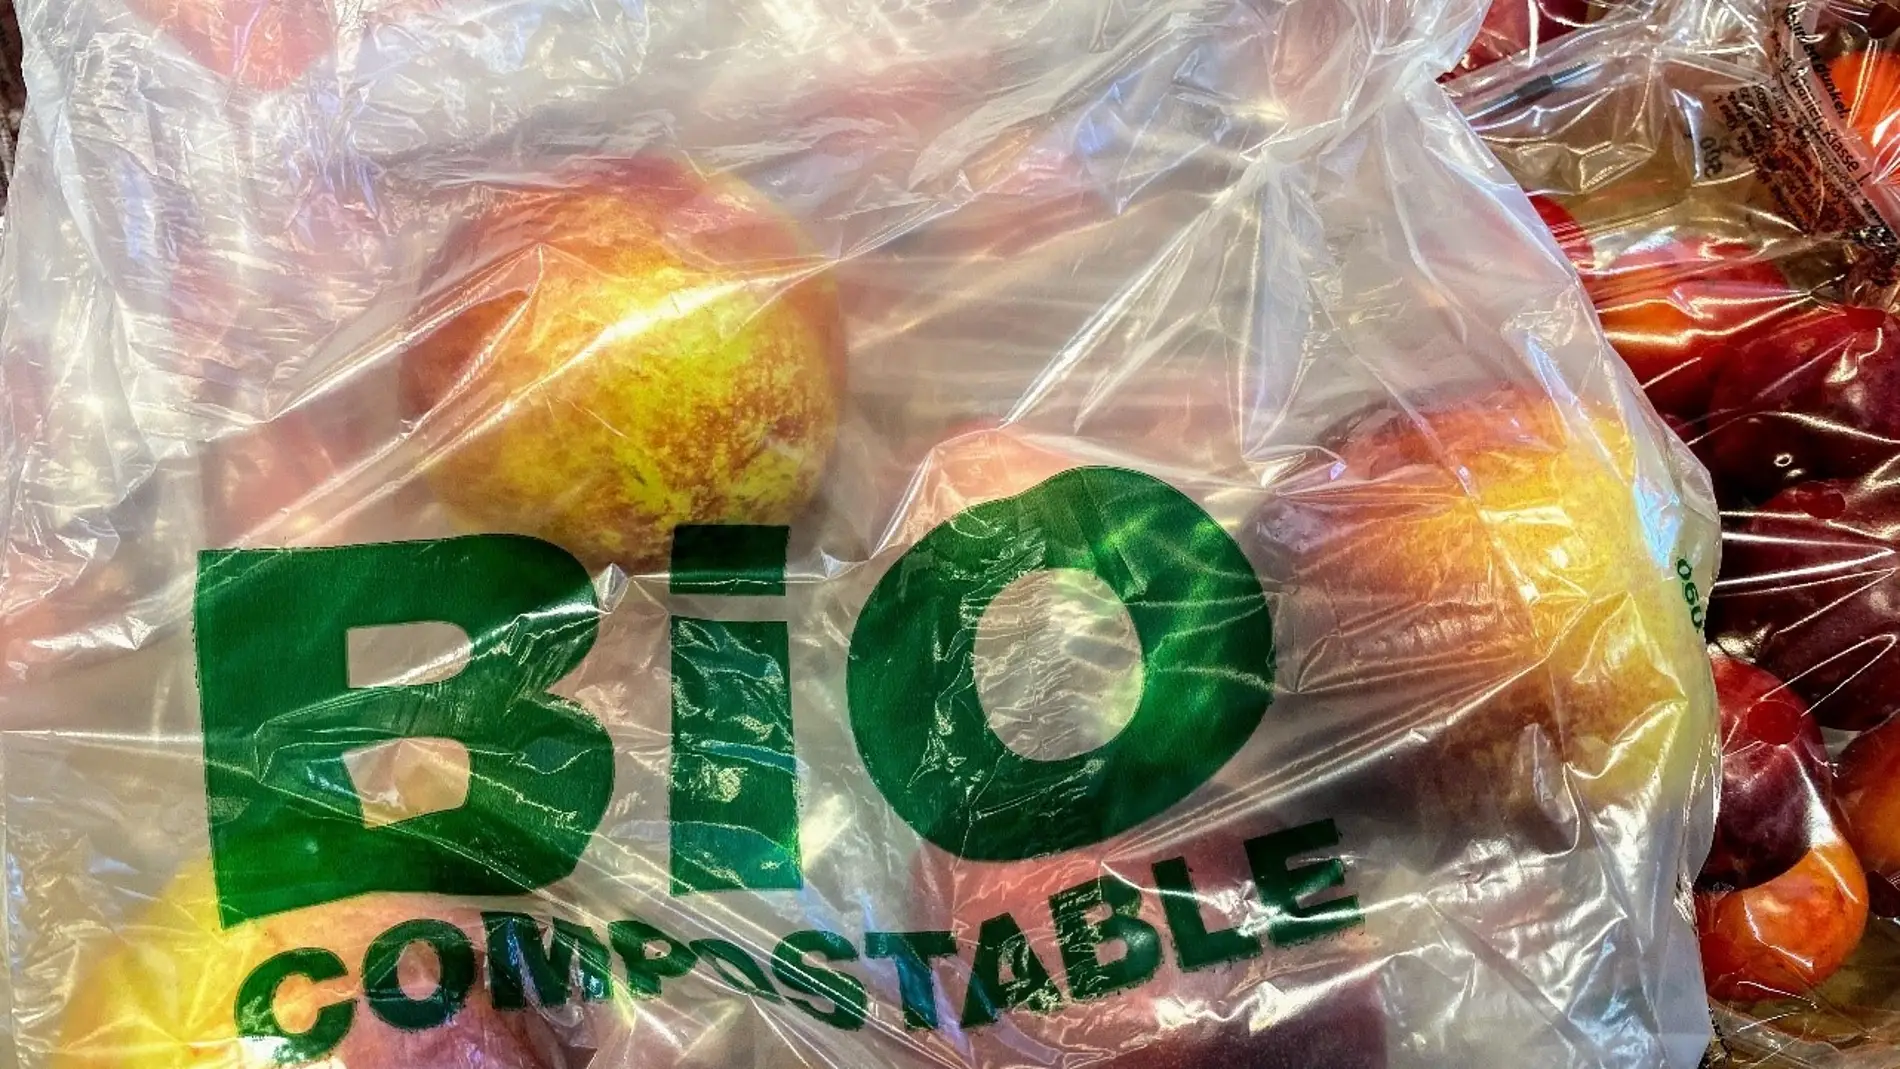 Un estudio preliminar muestra mayor toxicidad en bolsas compostables que en las de plastico convencional